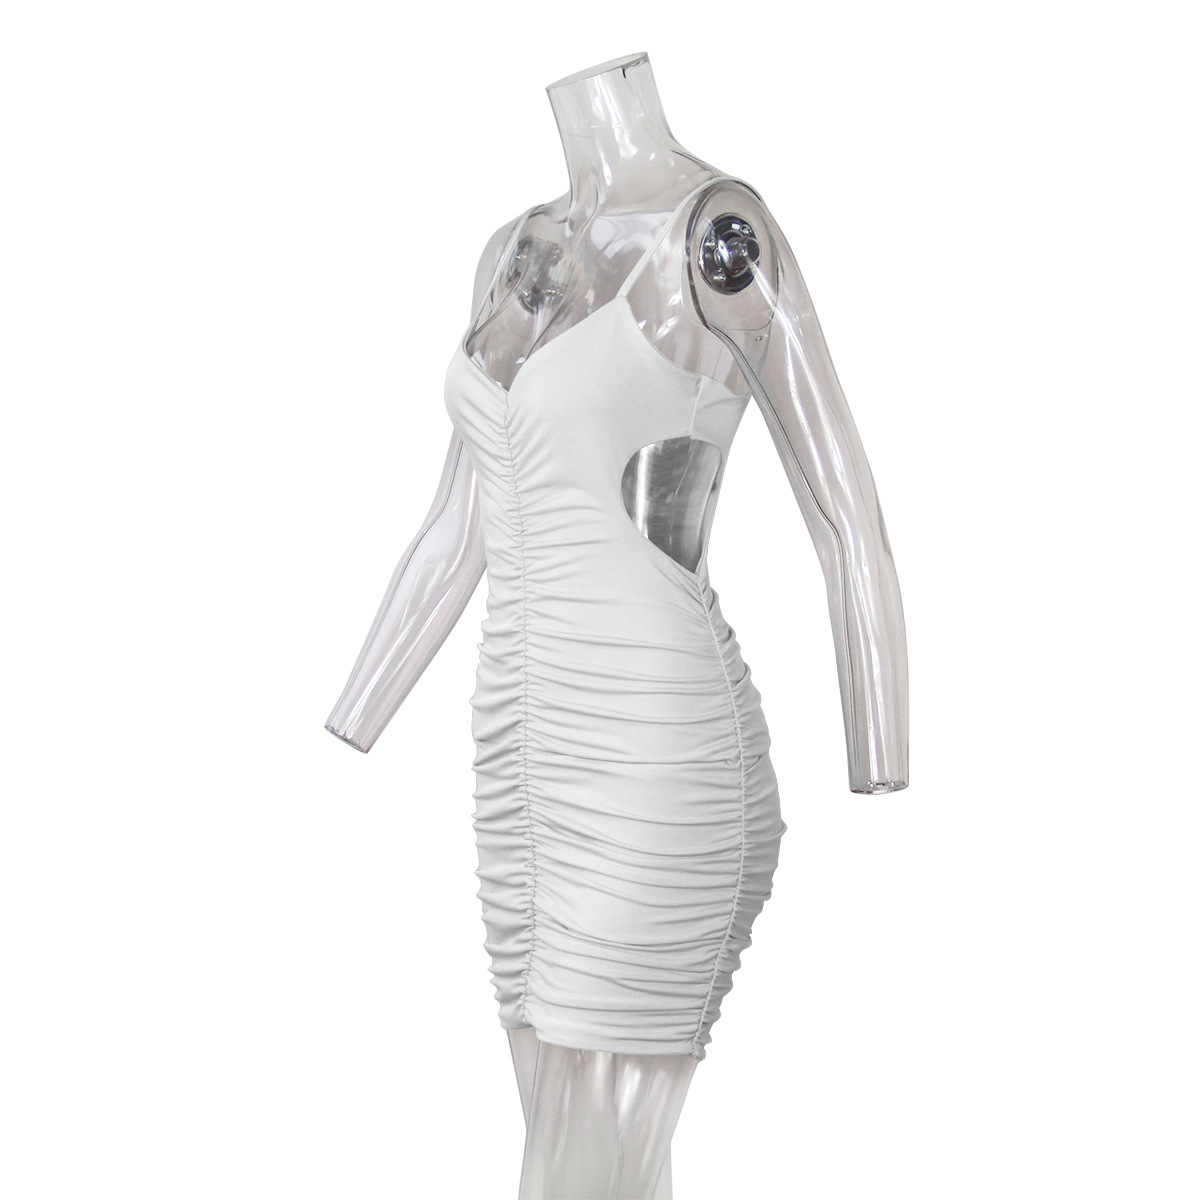 V-neck low-cut sling fold dress NSZY17806